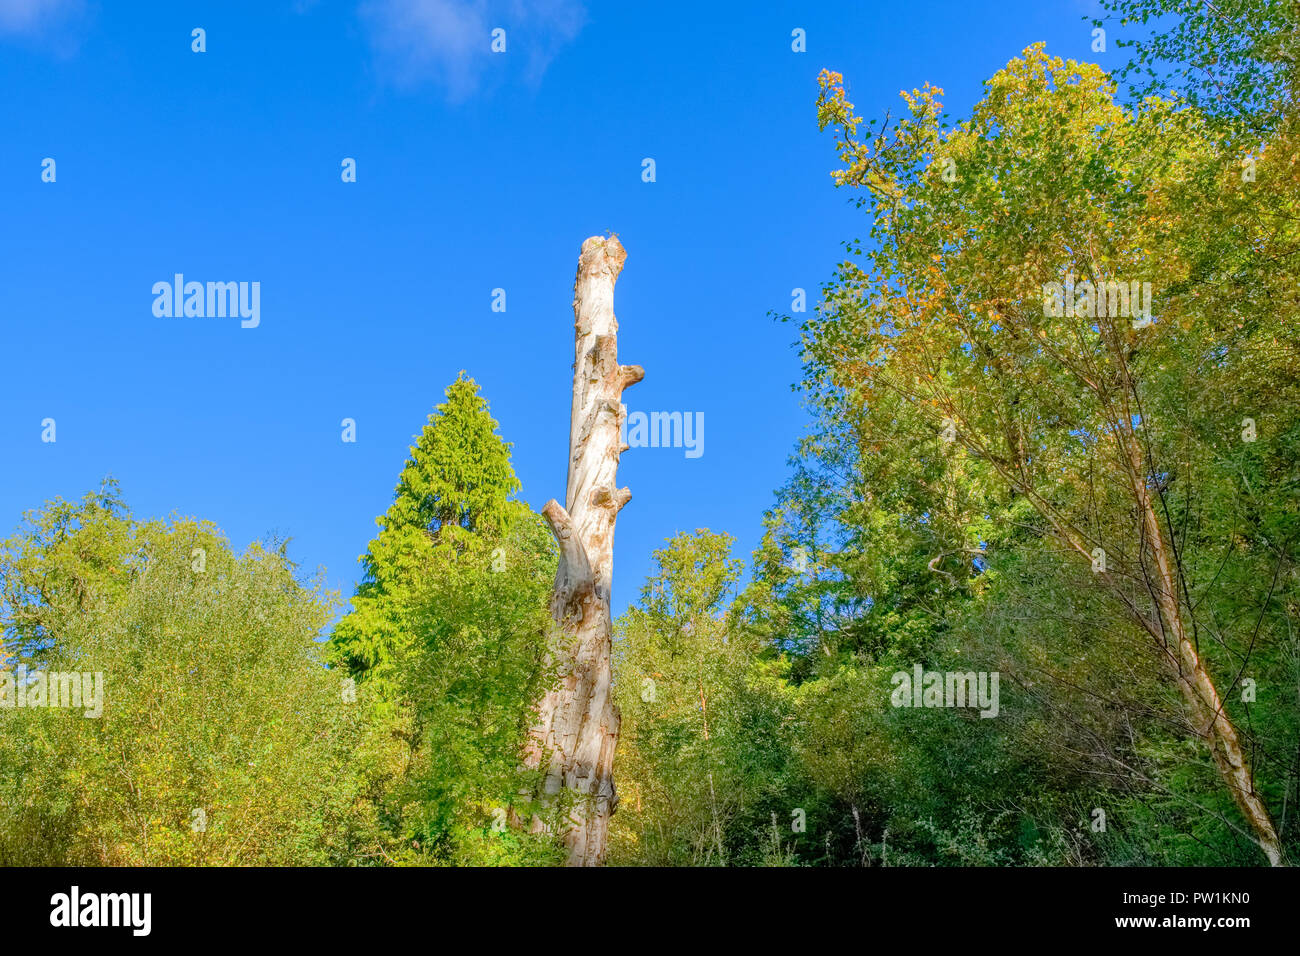 Ein Toter Baumstamm auf Eigene amounst Lebende Bäume Stockfoto